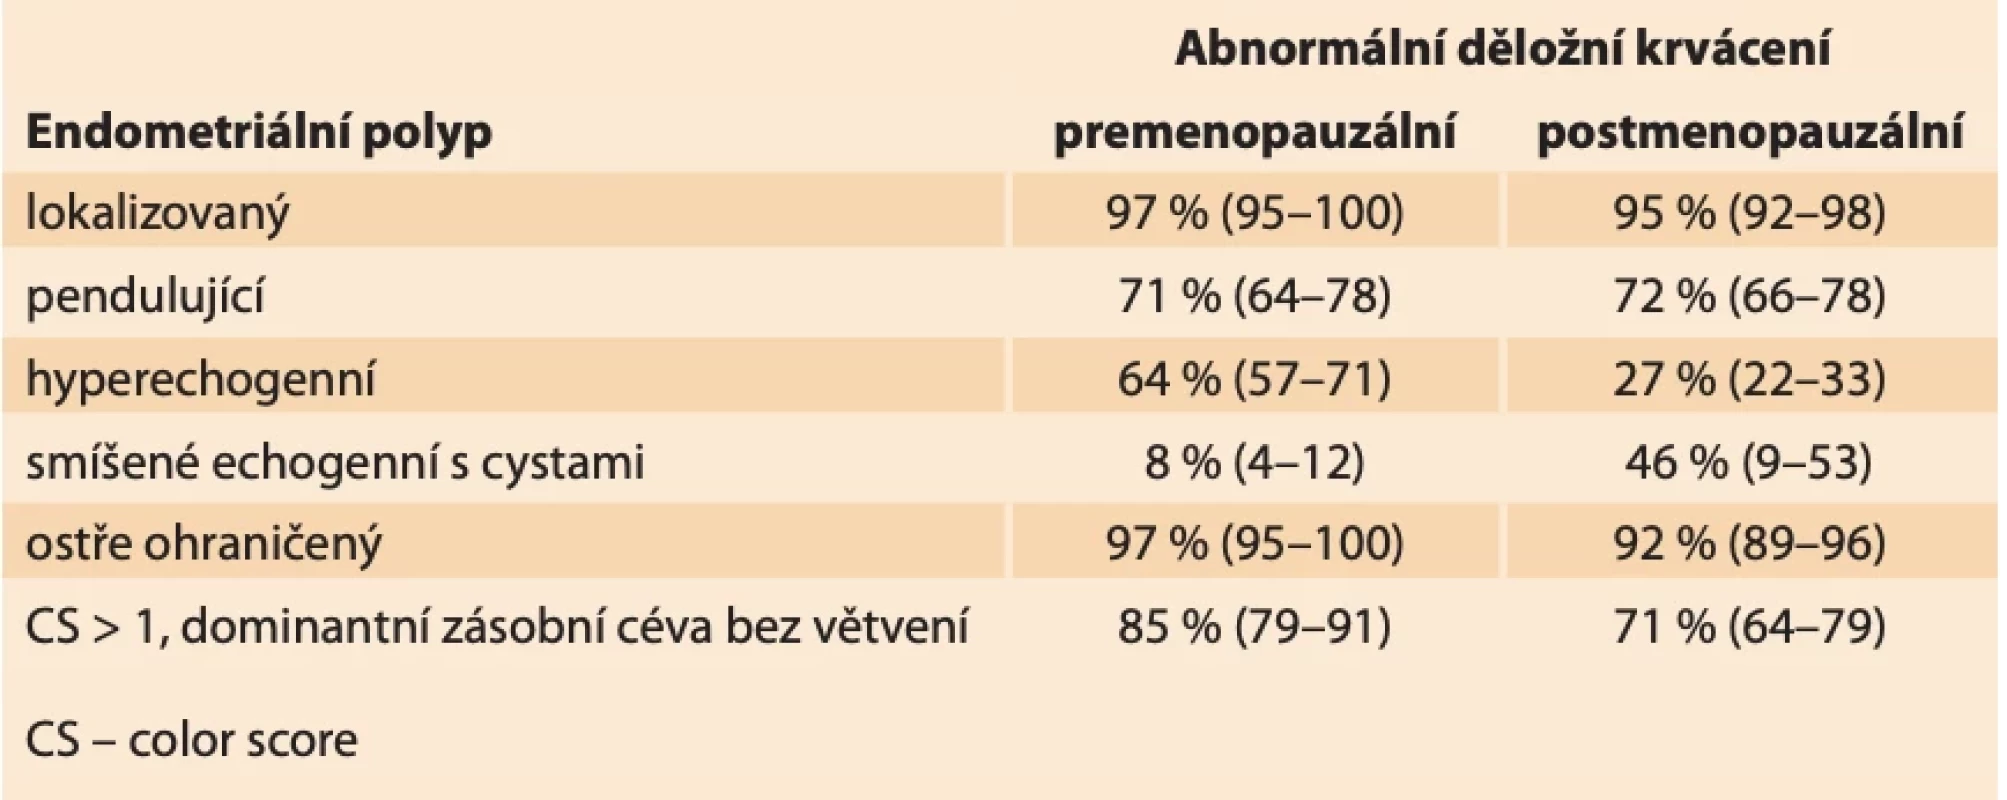 Ultrazvukové charakteristiky endometriálních polypů u pacientek s abnormálním děložním krvácením dle Van den Bosch et al. [13]. Výsledky uvedeny jako: % (%CI). // Ultrasound characteristics of endometrial polyps in patients with abnormal uterine bleeding according to Van den Bosch et al. [13]. Results reported as: % (%CI).